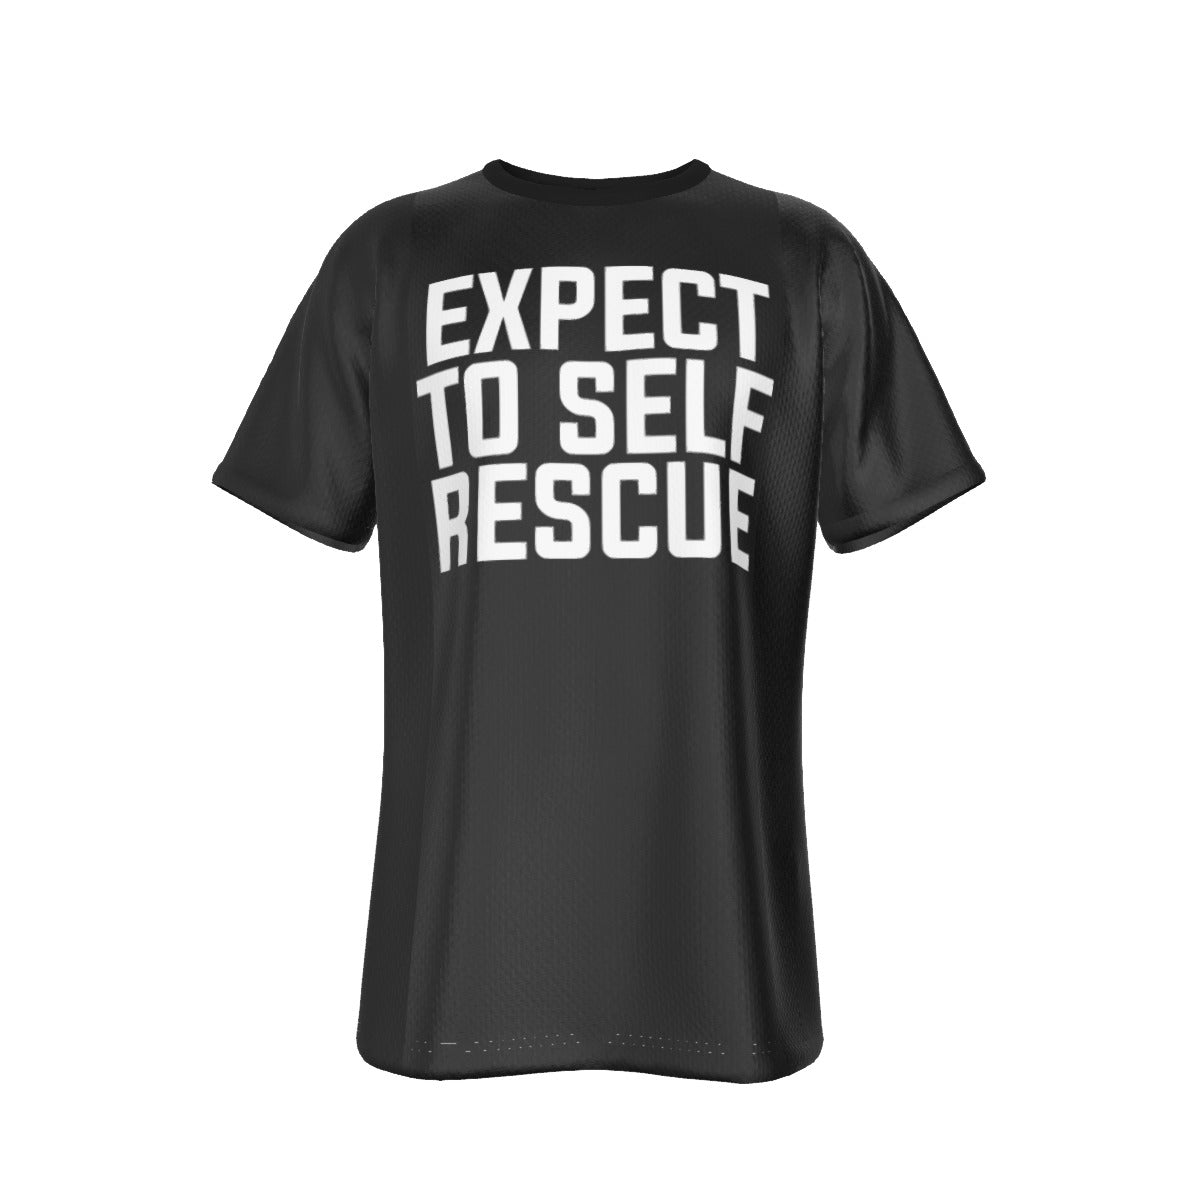 Self Rescue